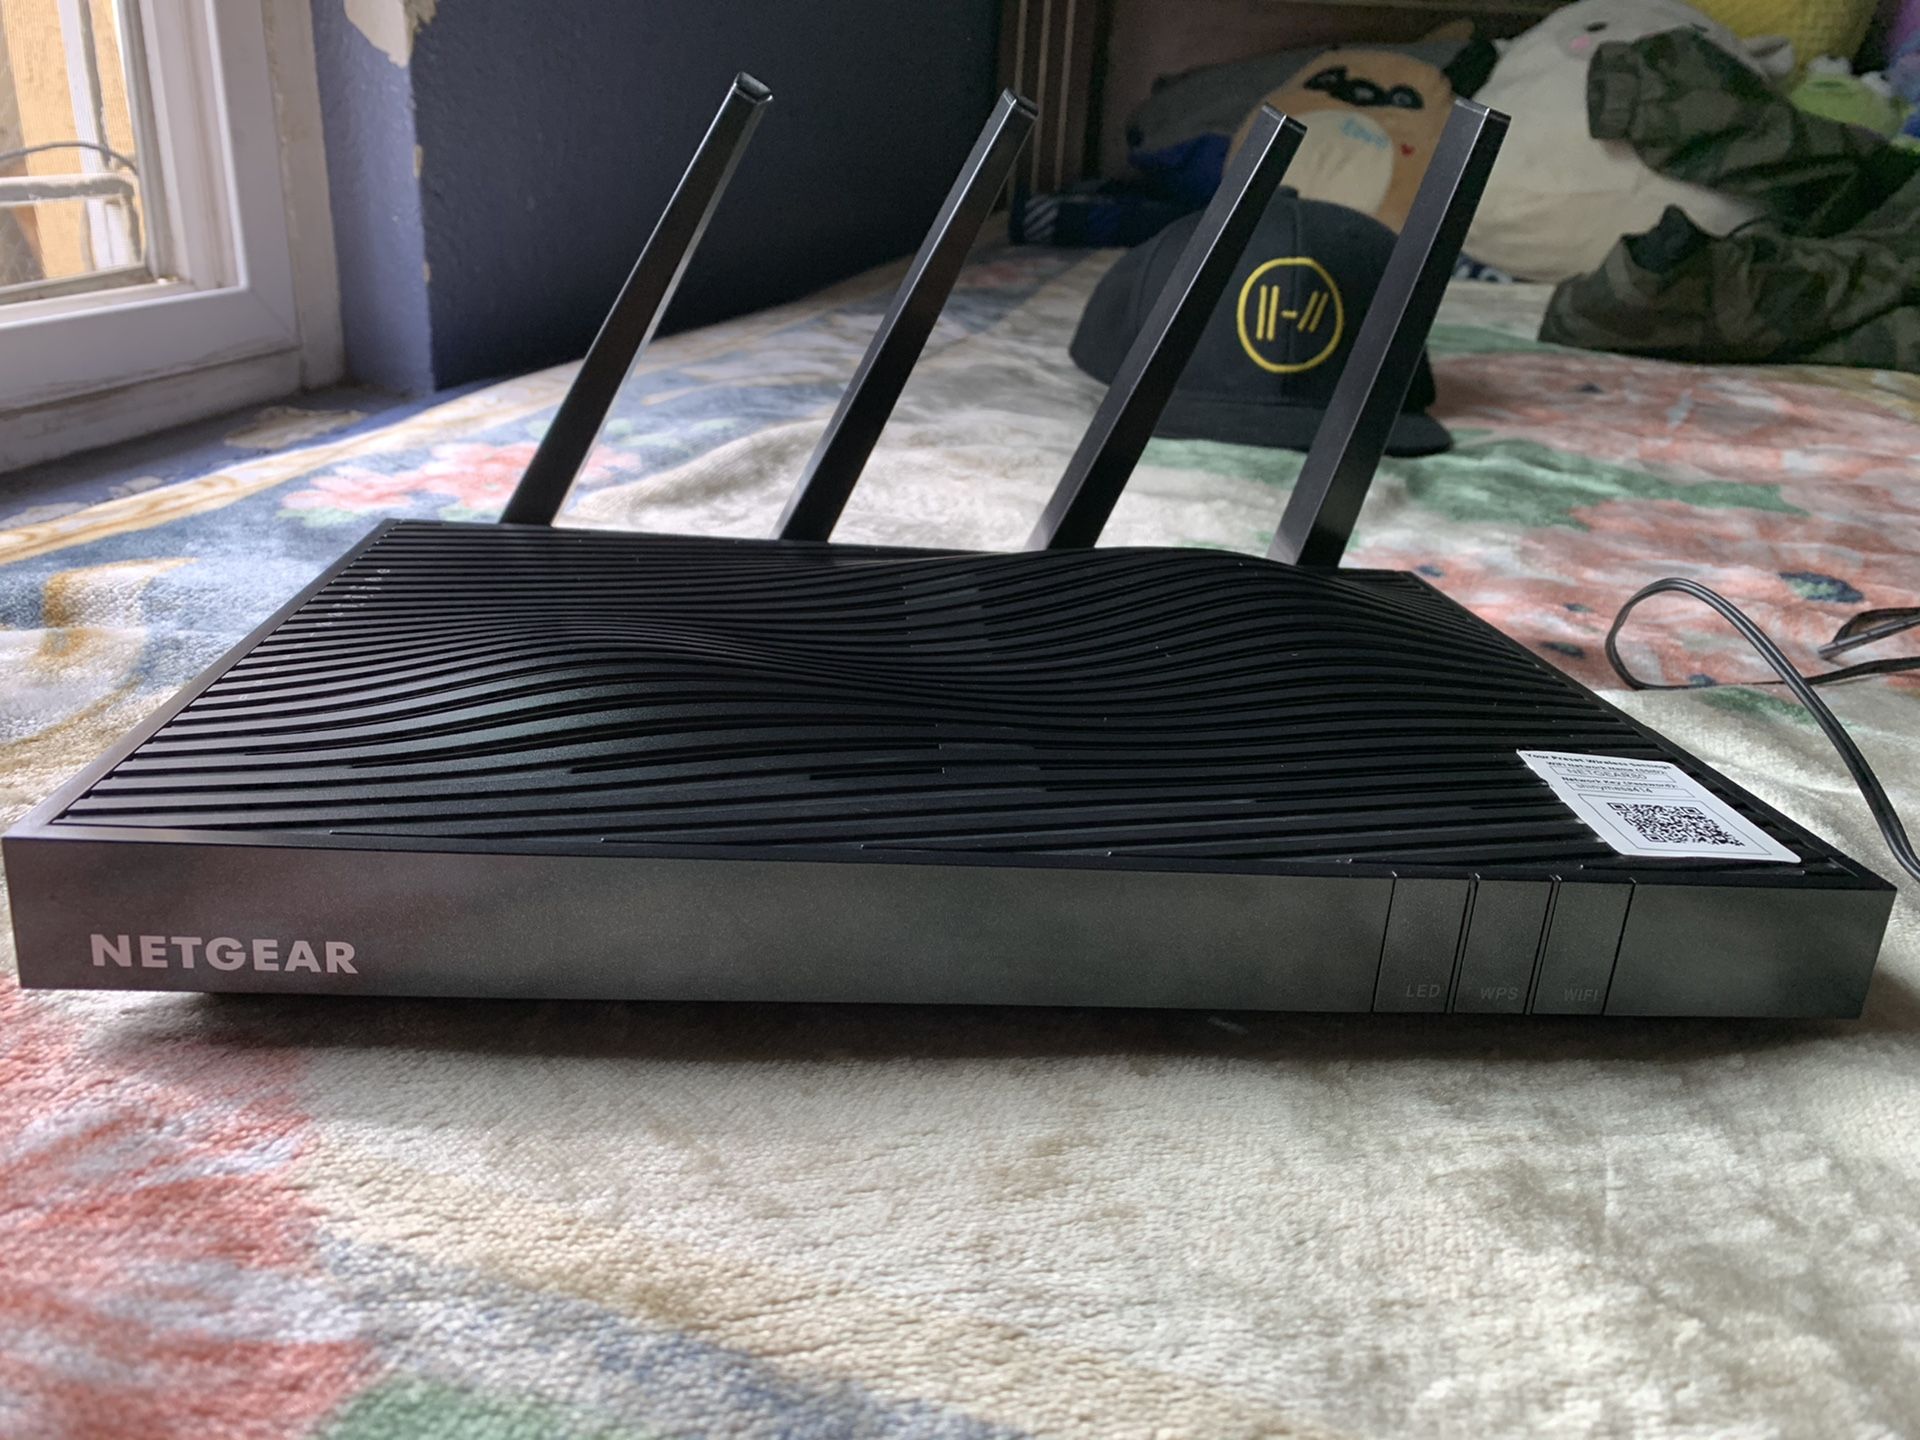 Netgear Nighthawk X8 tri-band WiFi router